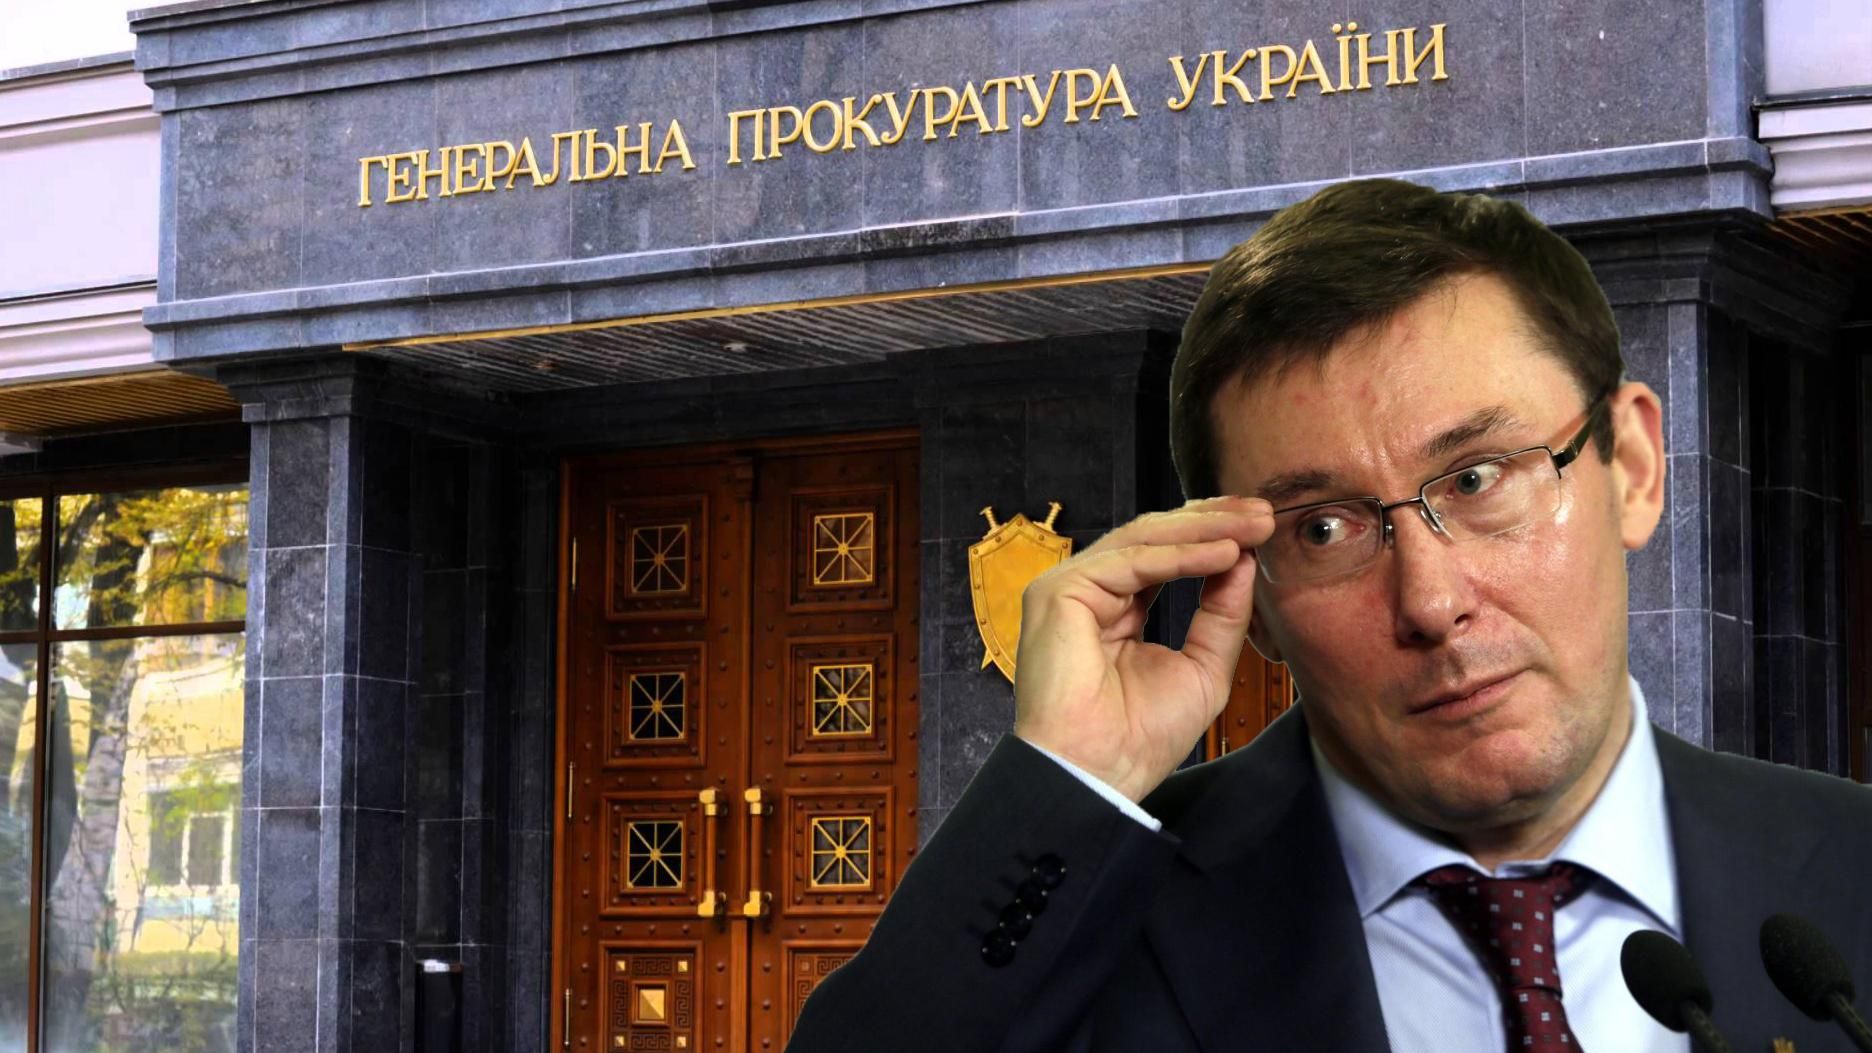 Почему объявили подозрения окружению Порошенко: объяснение от ГПУ